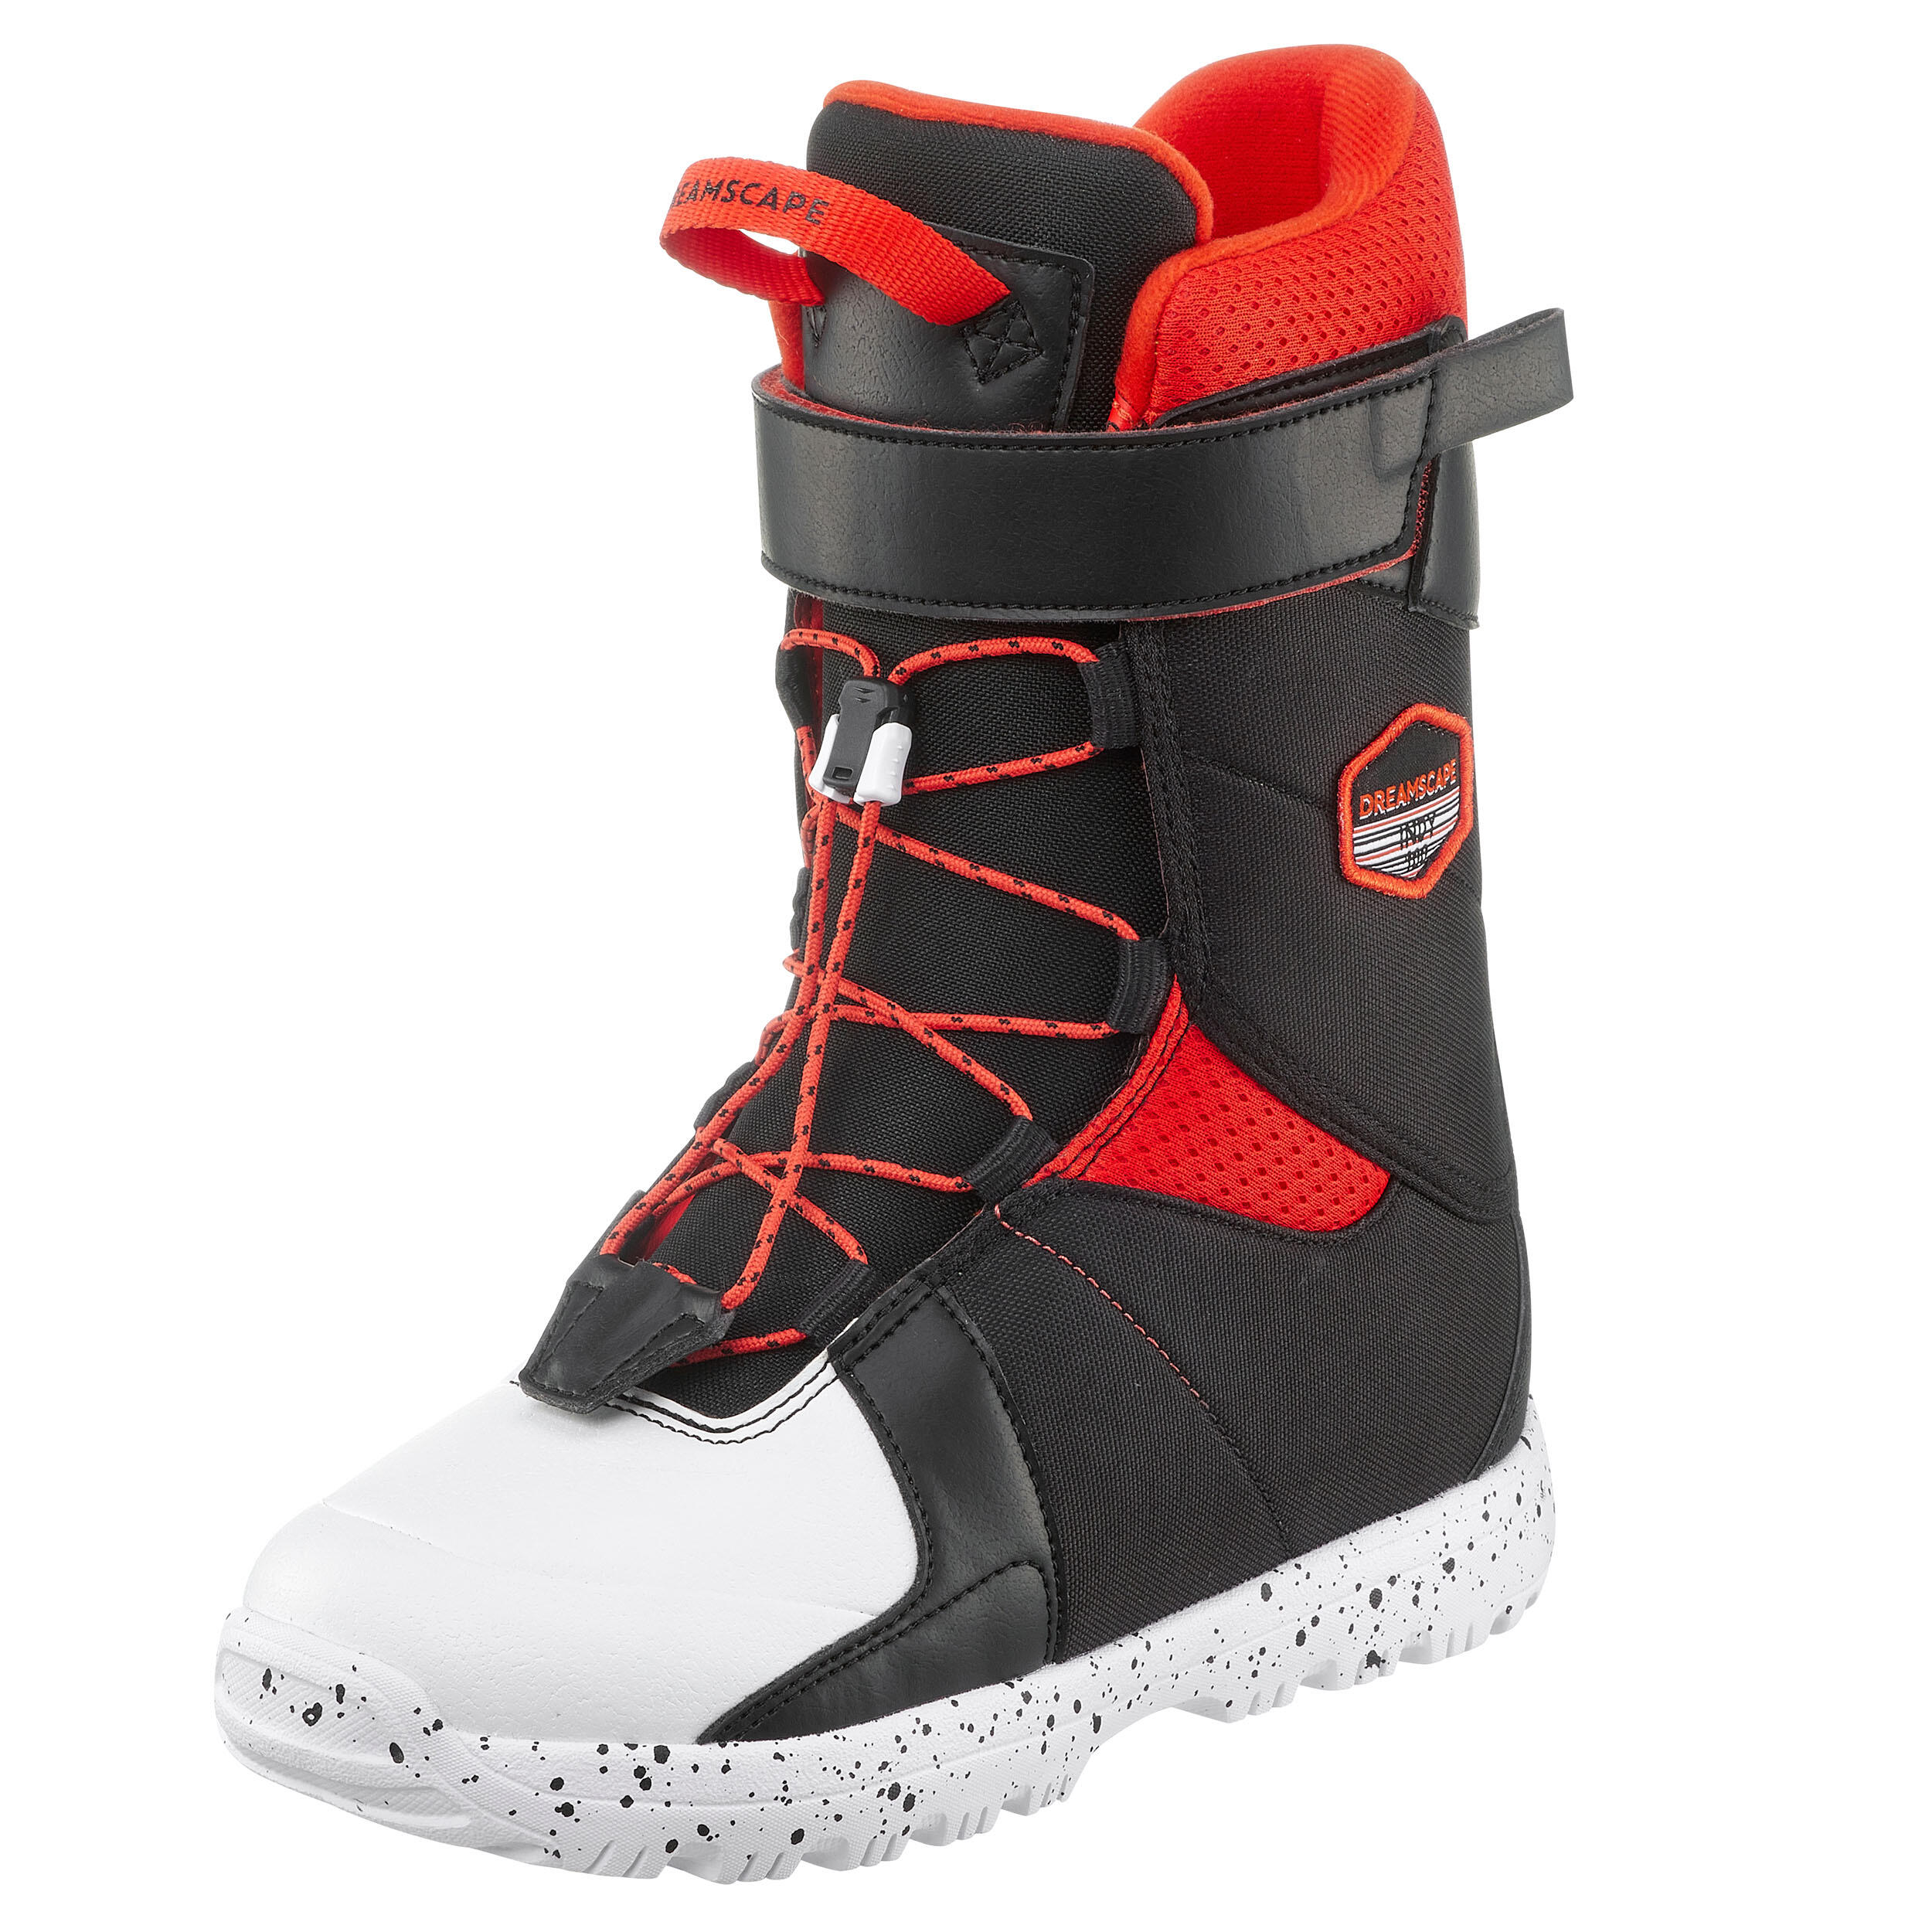 ASKEW Snowboard boots Jeugd Kids Maat EU35 UK2 Mondo 225 mm C US3 Schoenen Jongensschoenen Laarzen 